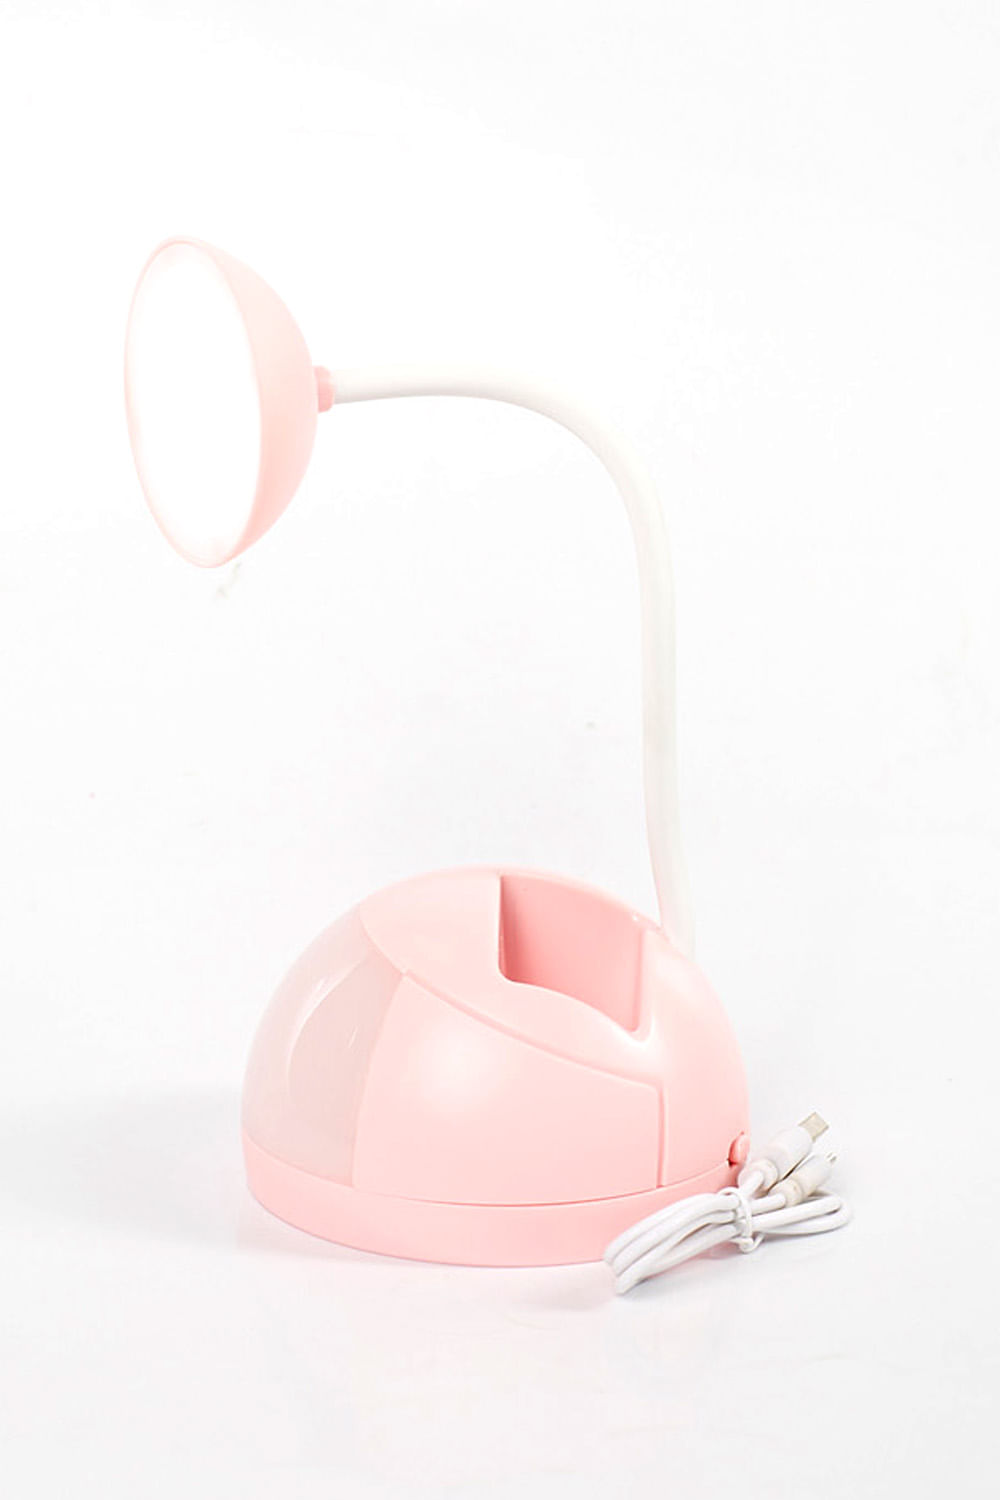 Lámpara de escritorio inalámbrica, luz de lectura LED, lámpara de mesa,  brillo ajustable táctil con portalápices, decoración de oficina, regalo  original para niña adolescente - rosa Zhivalor GX-505